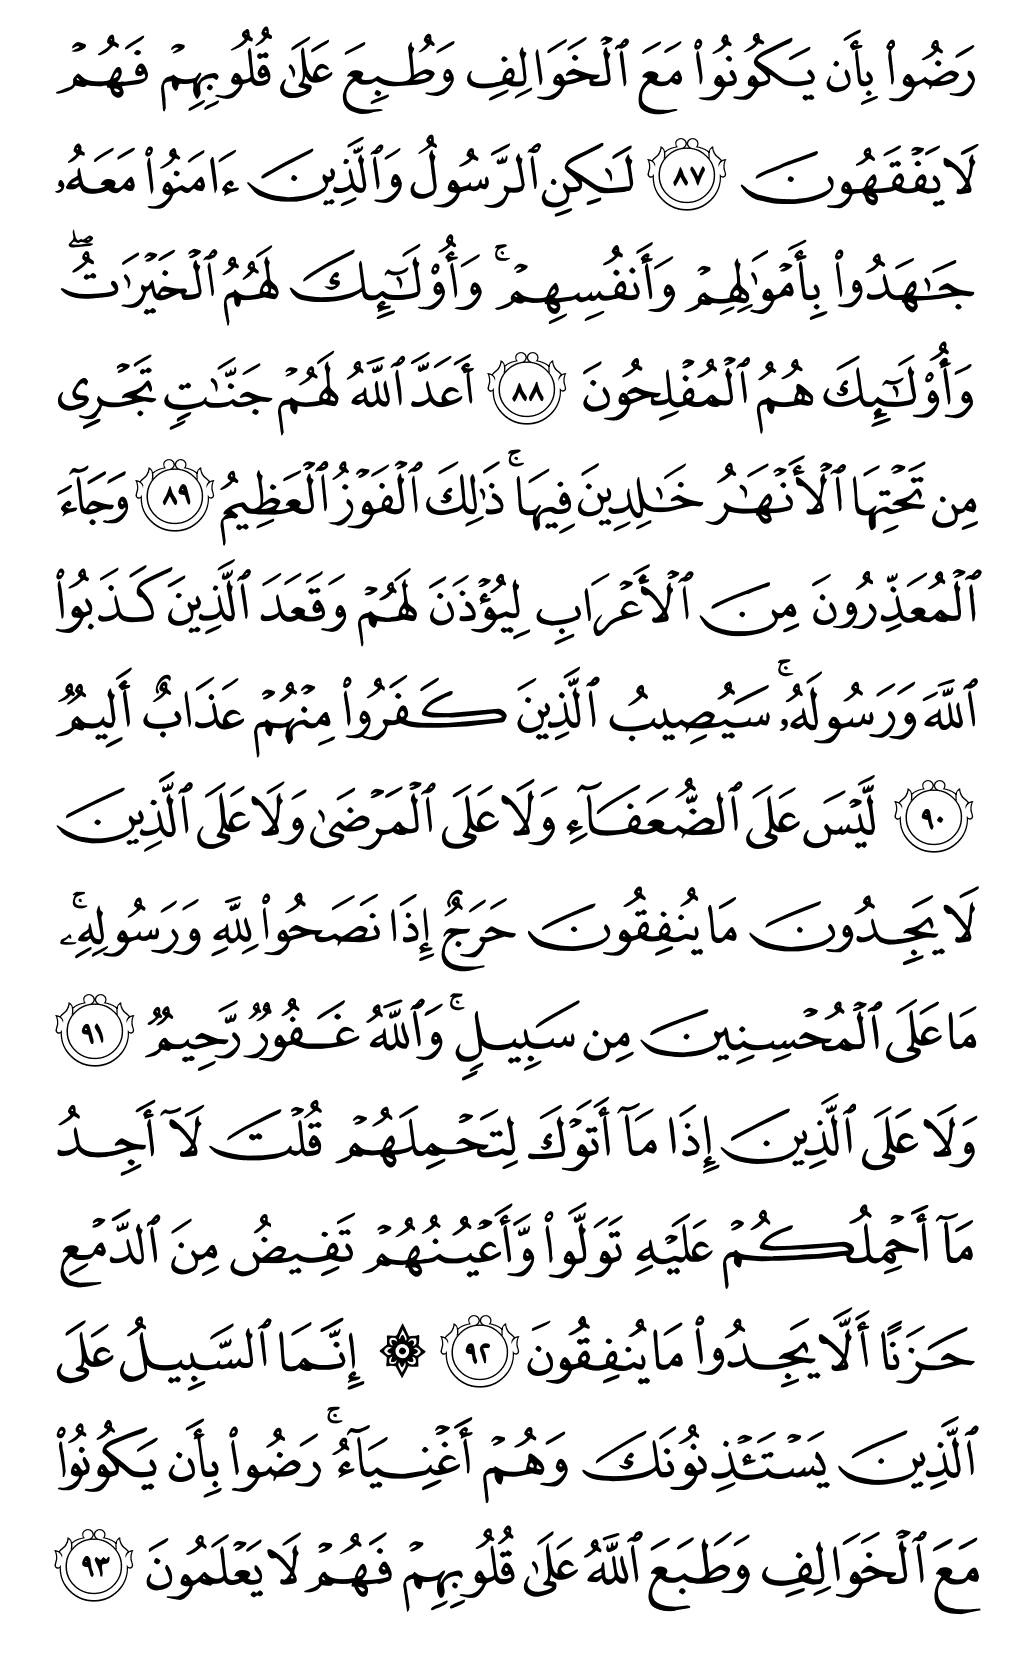 الصفحة رقم 201 من القرآن الكريم